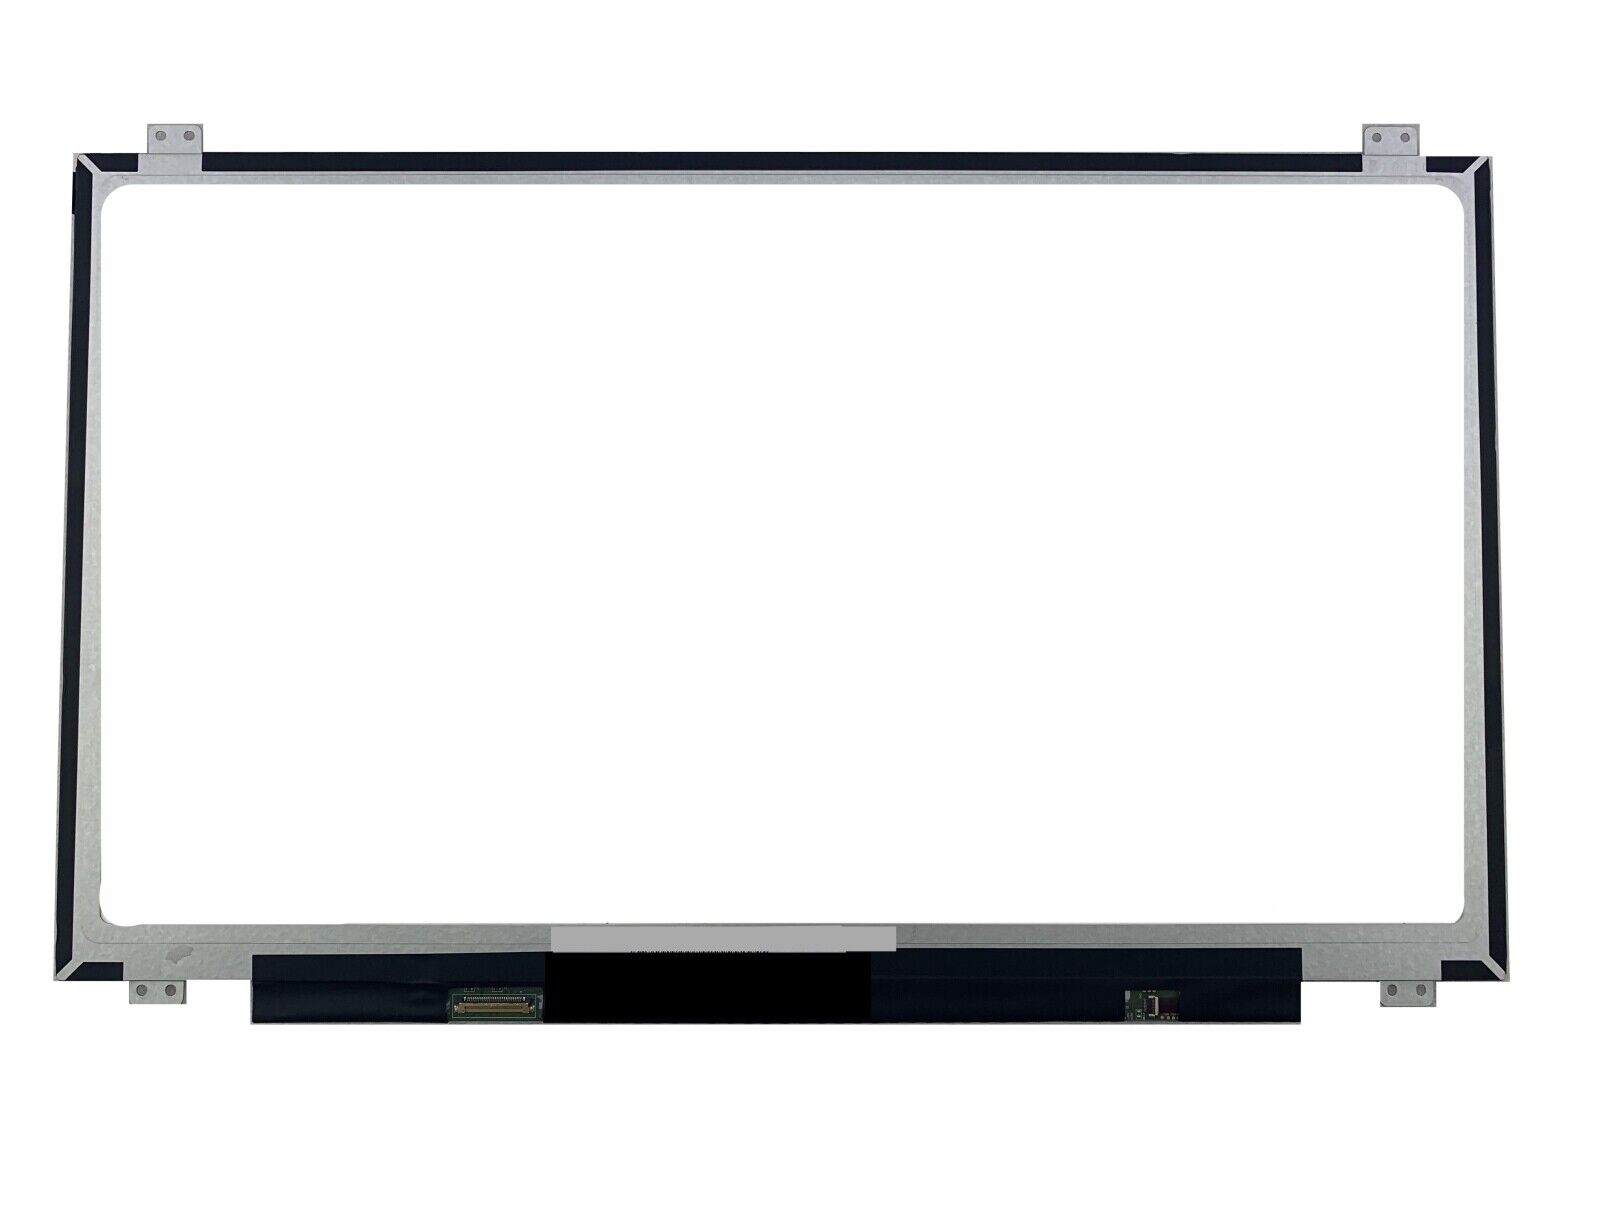 Lenovo Ideapad 300-17isk 300 (17) LED LCD Screen for 17.3 WXGA+ Display New